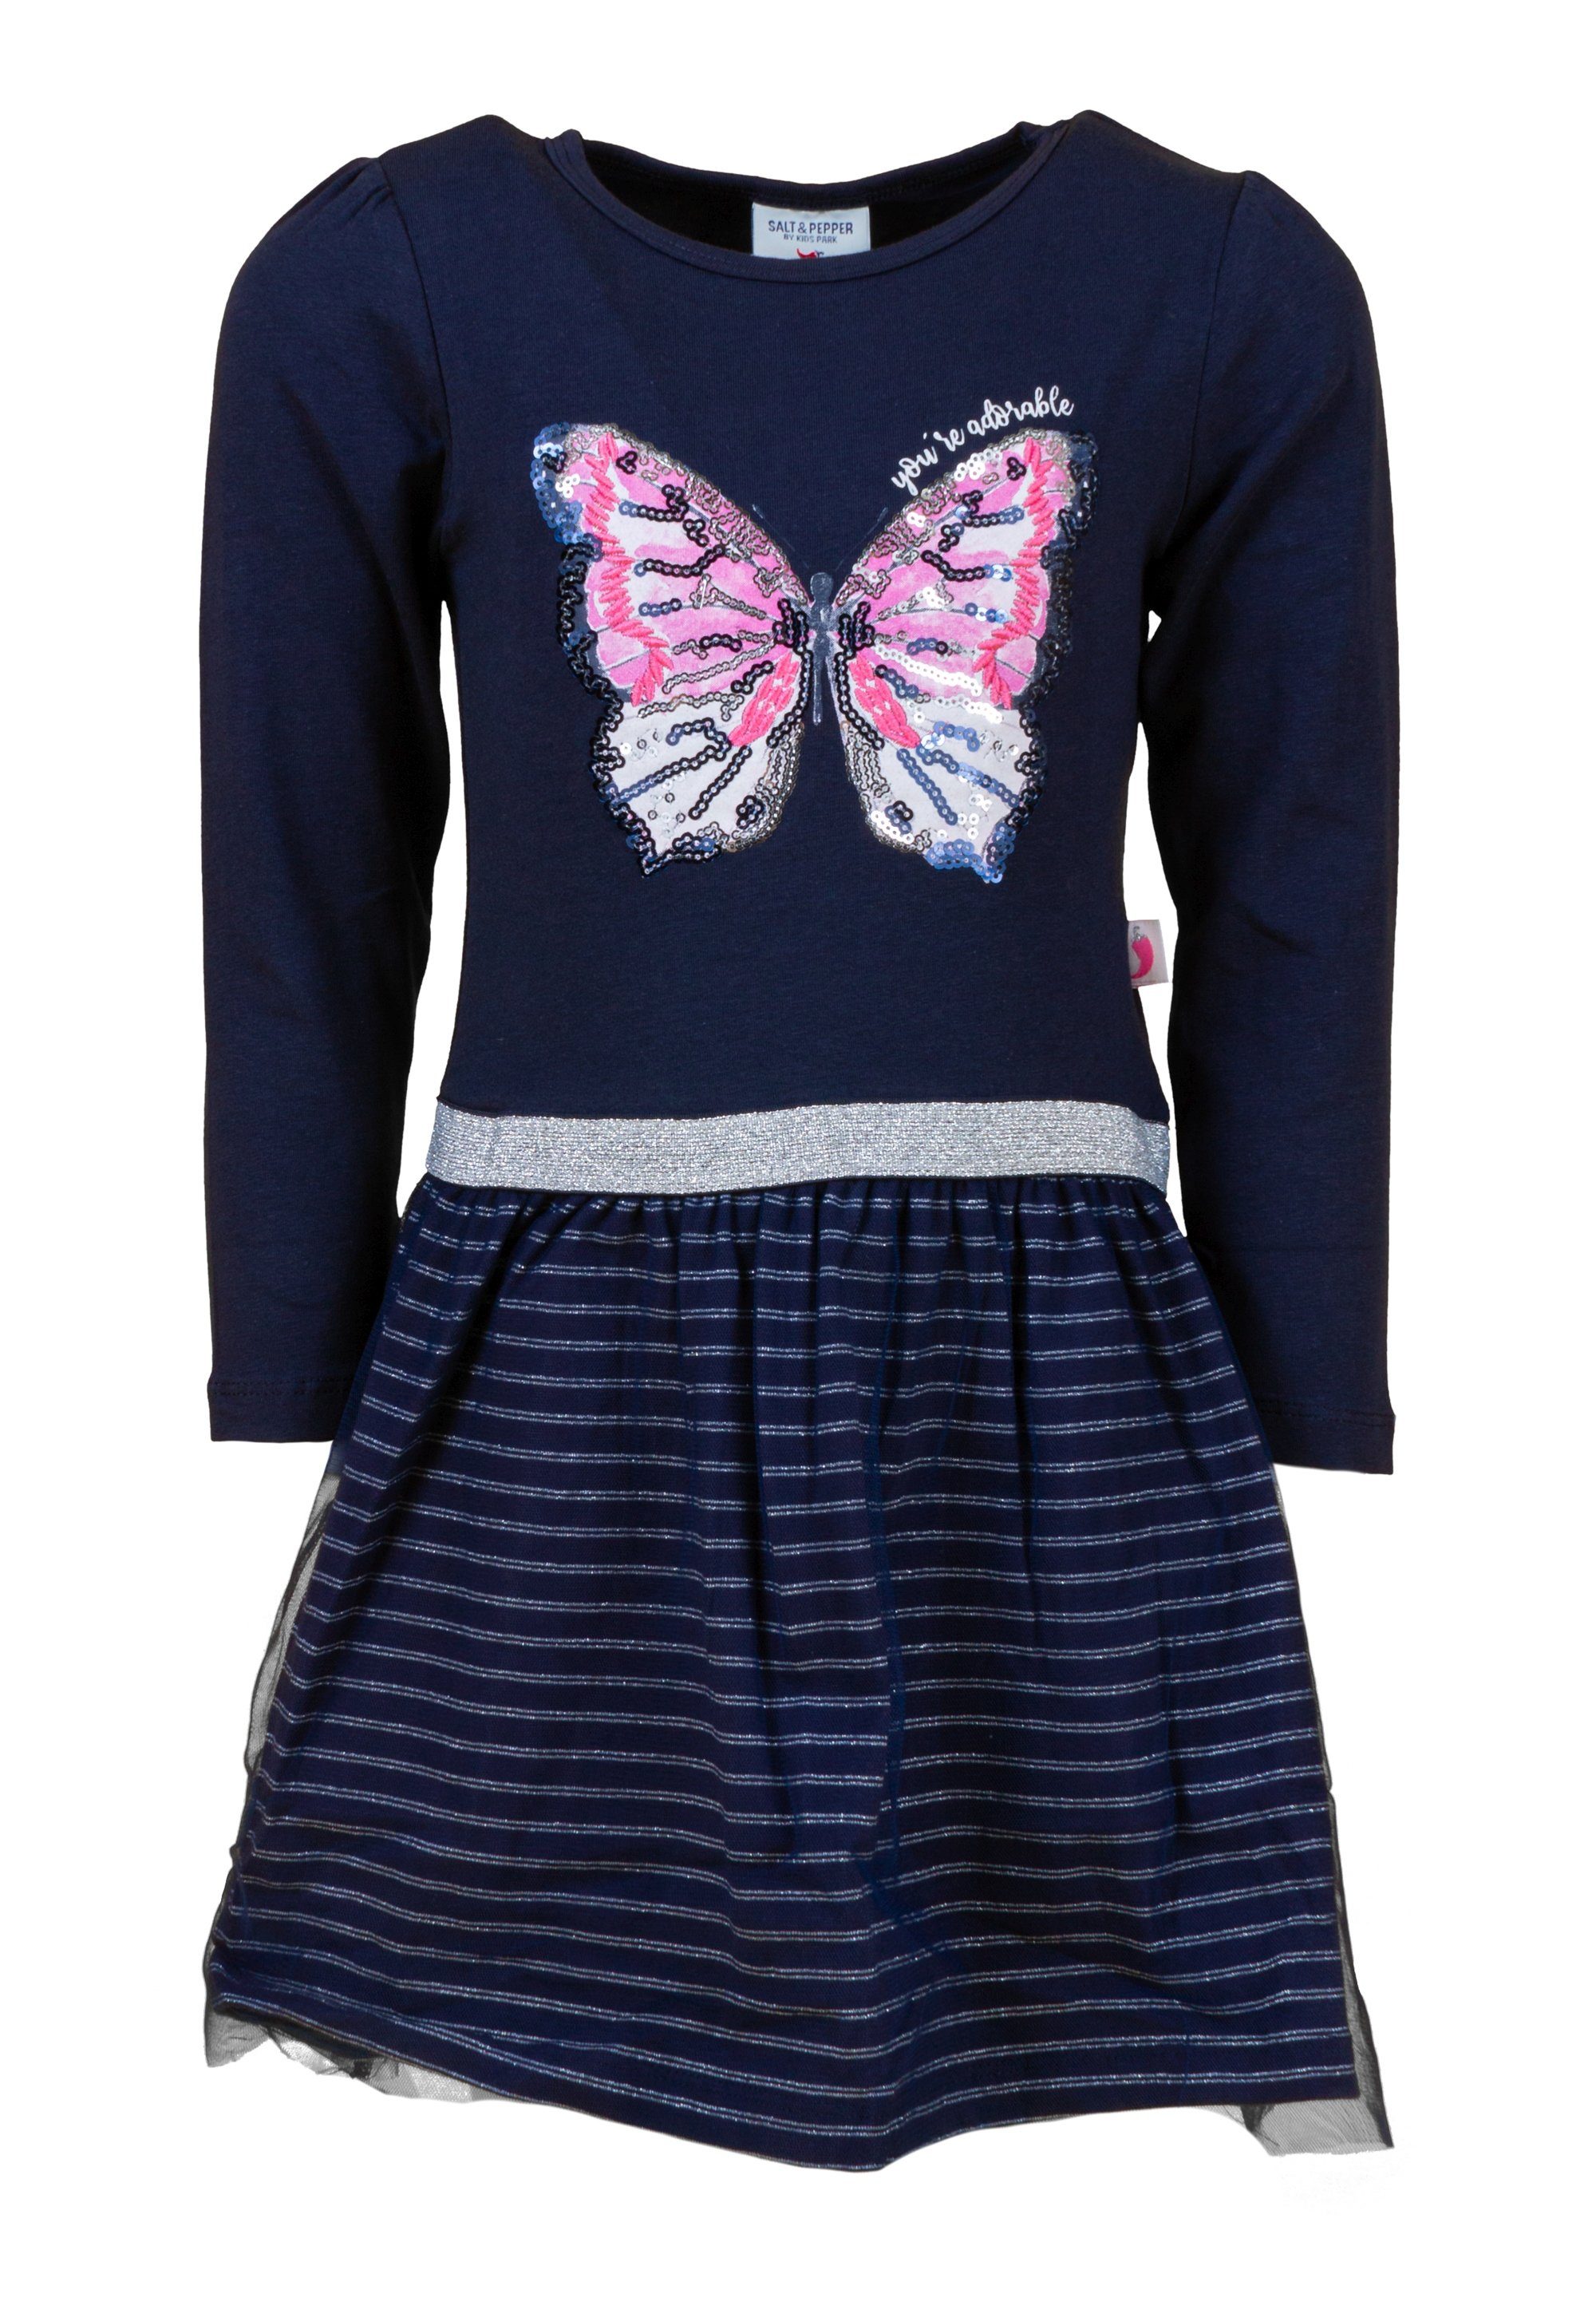 SALT AND PEPPER Jerseykleid Pre Spring mit Schmetterlings-Motiv und Pailletten dunkelblau